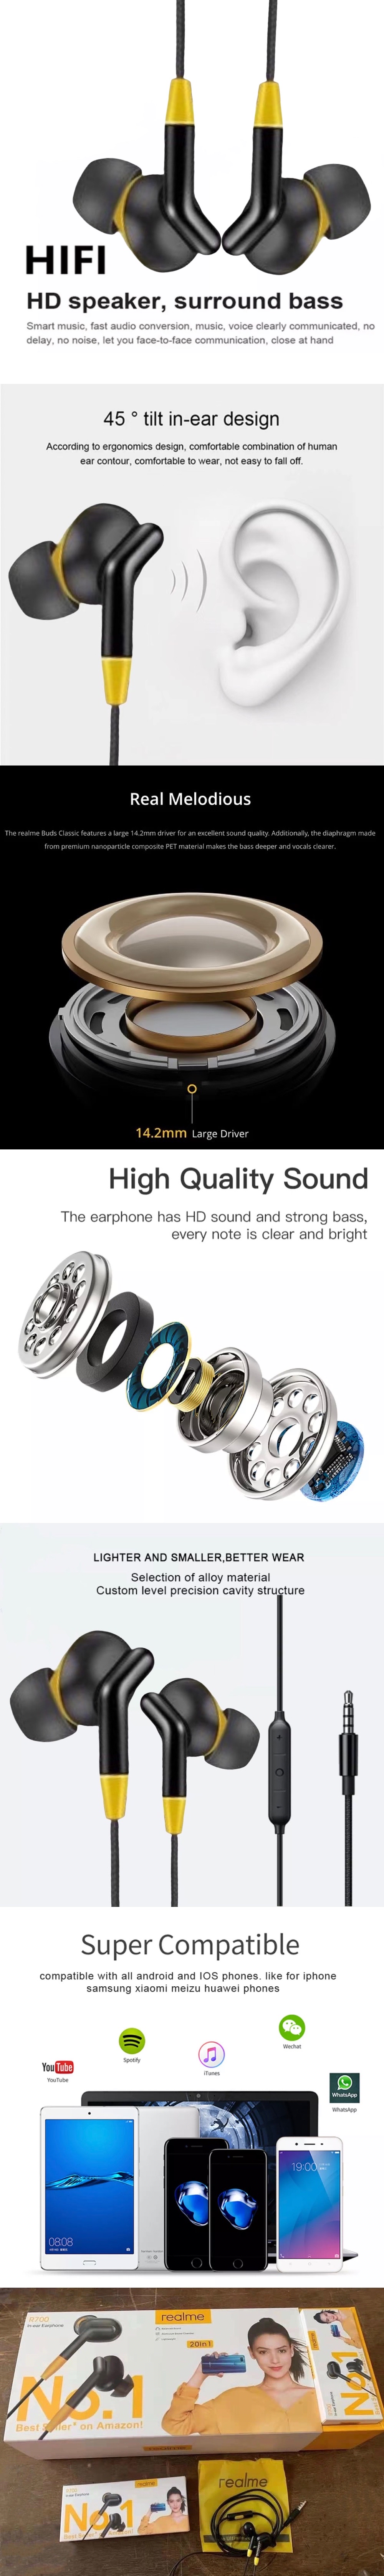 ข้อมูลเพิ่มเติมของ หูฟังเรียวมี Realme R700 In-ear Earphone ของแท้ เสียงดี ช่องเสียบแบบ 3.5 mm Jack ใหม่ล่าสุด รับประกัน1ปี BY THEAODIGITAL